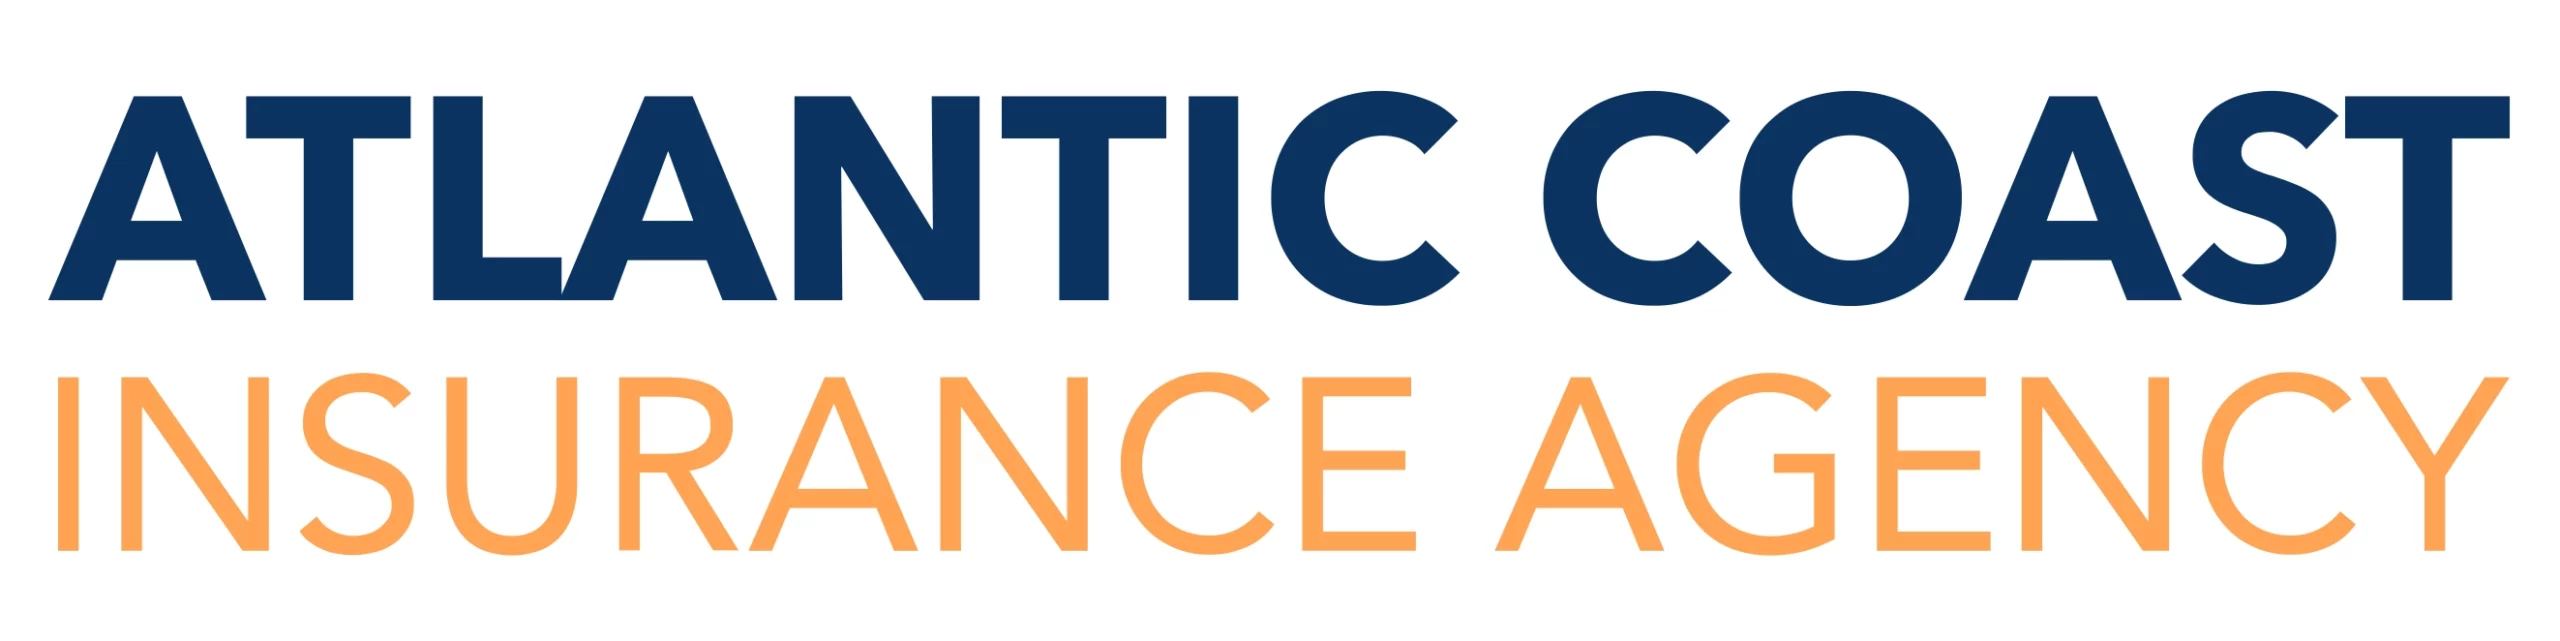 Atlantic Coast Insurance Agency